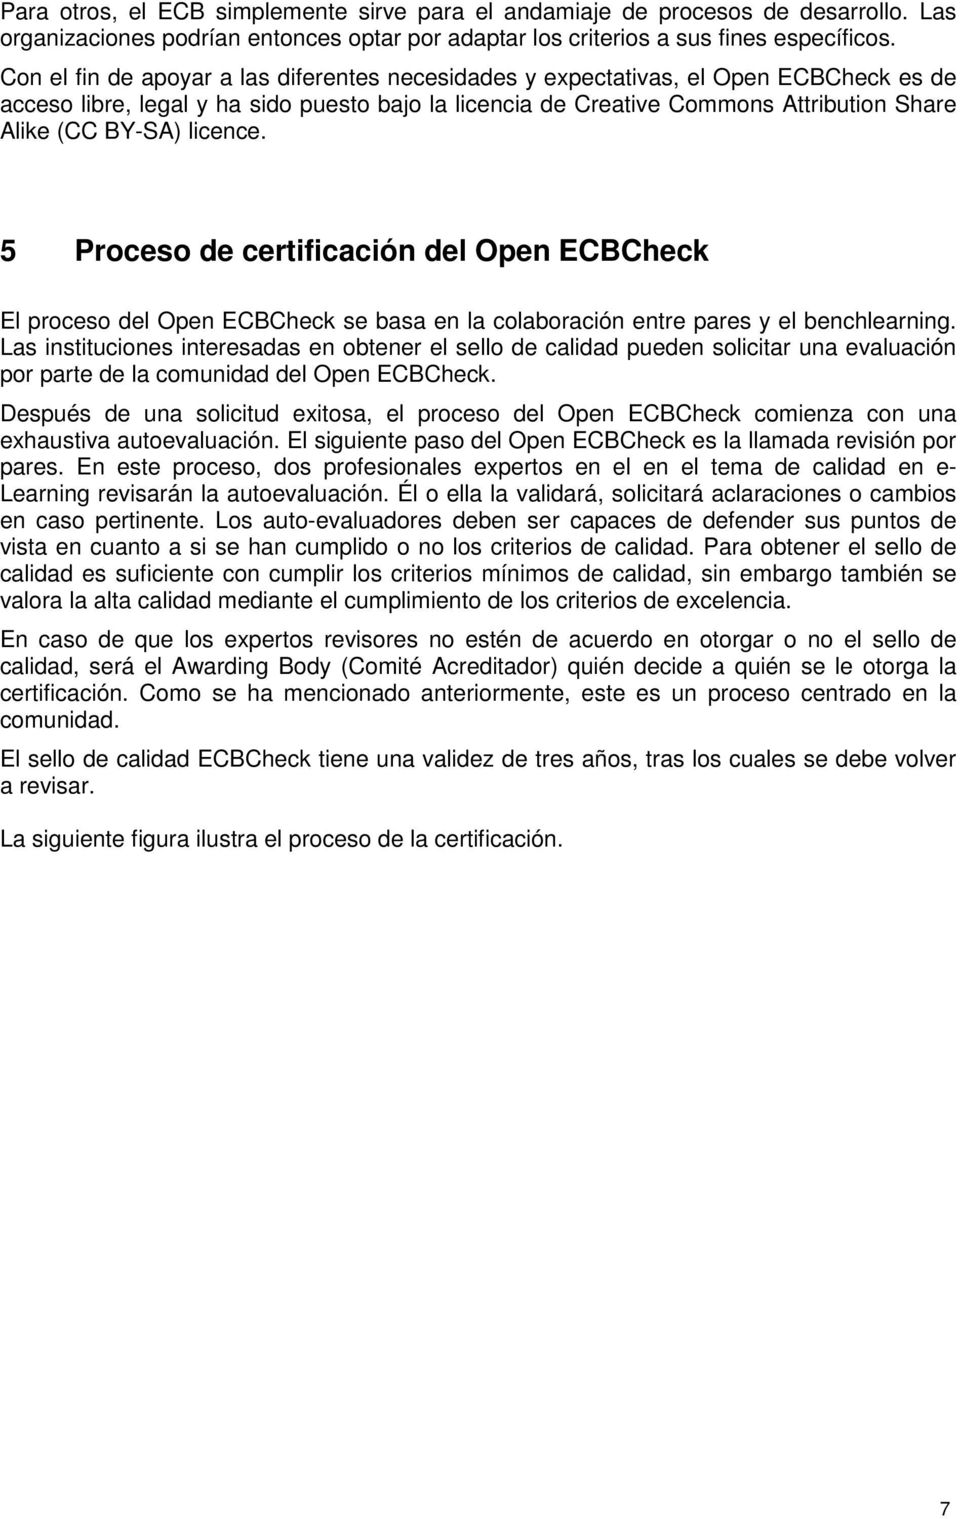 licence. 5 Proceso de certificación del Open ECBCheck El proceso del Open ECBCheck se basa en la colaboración entre pares y el benchlearning.